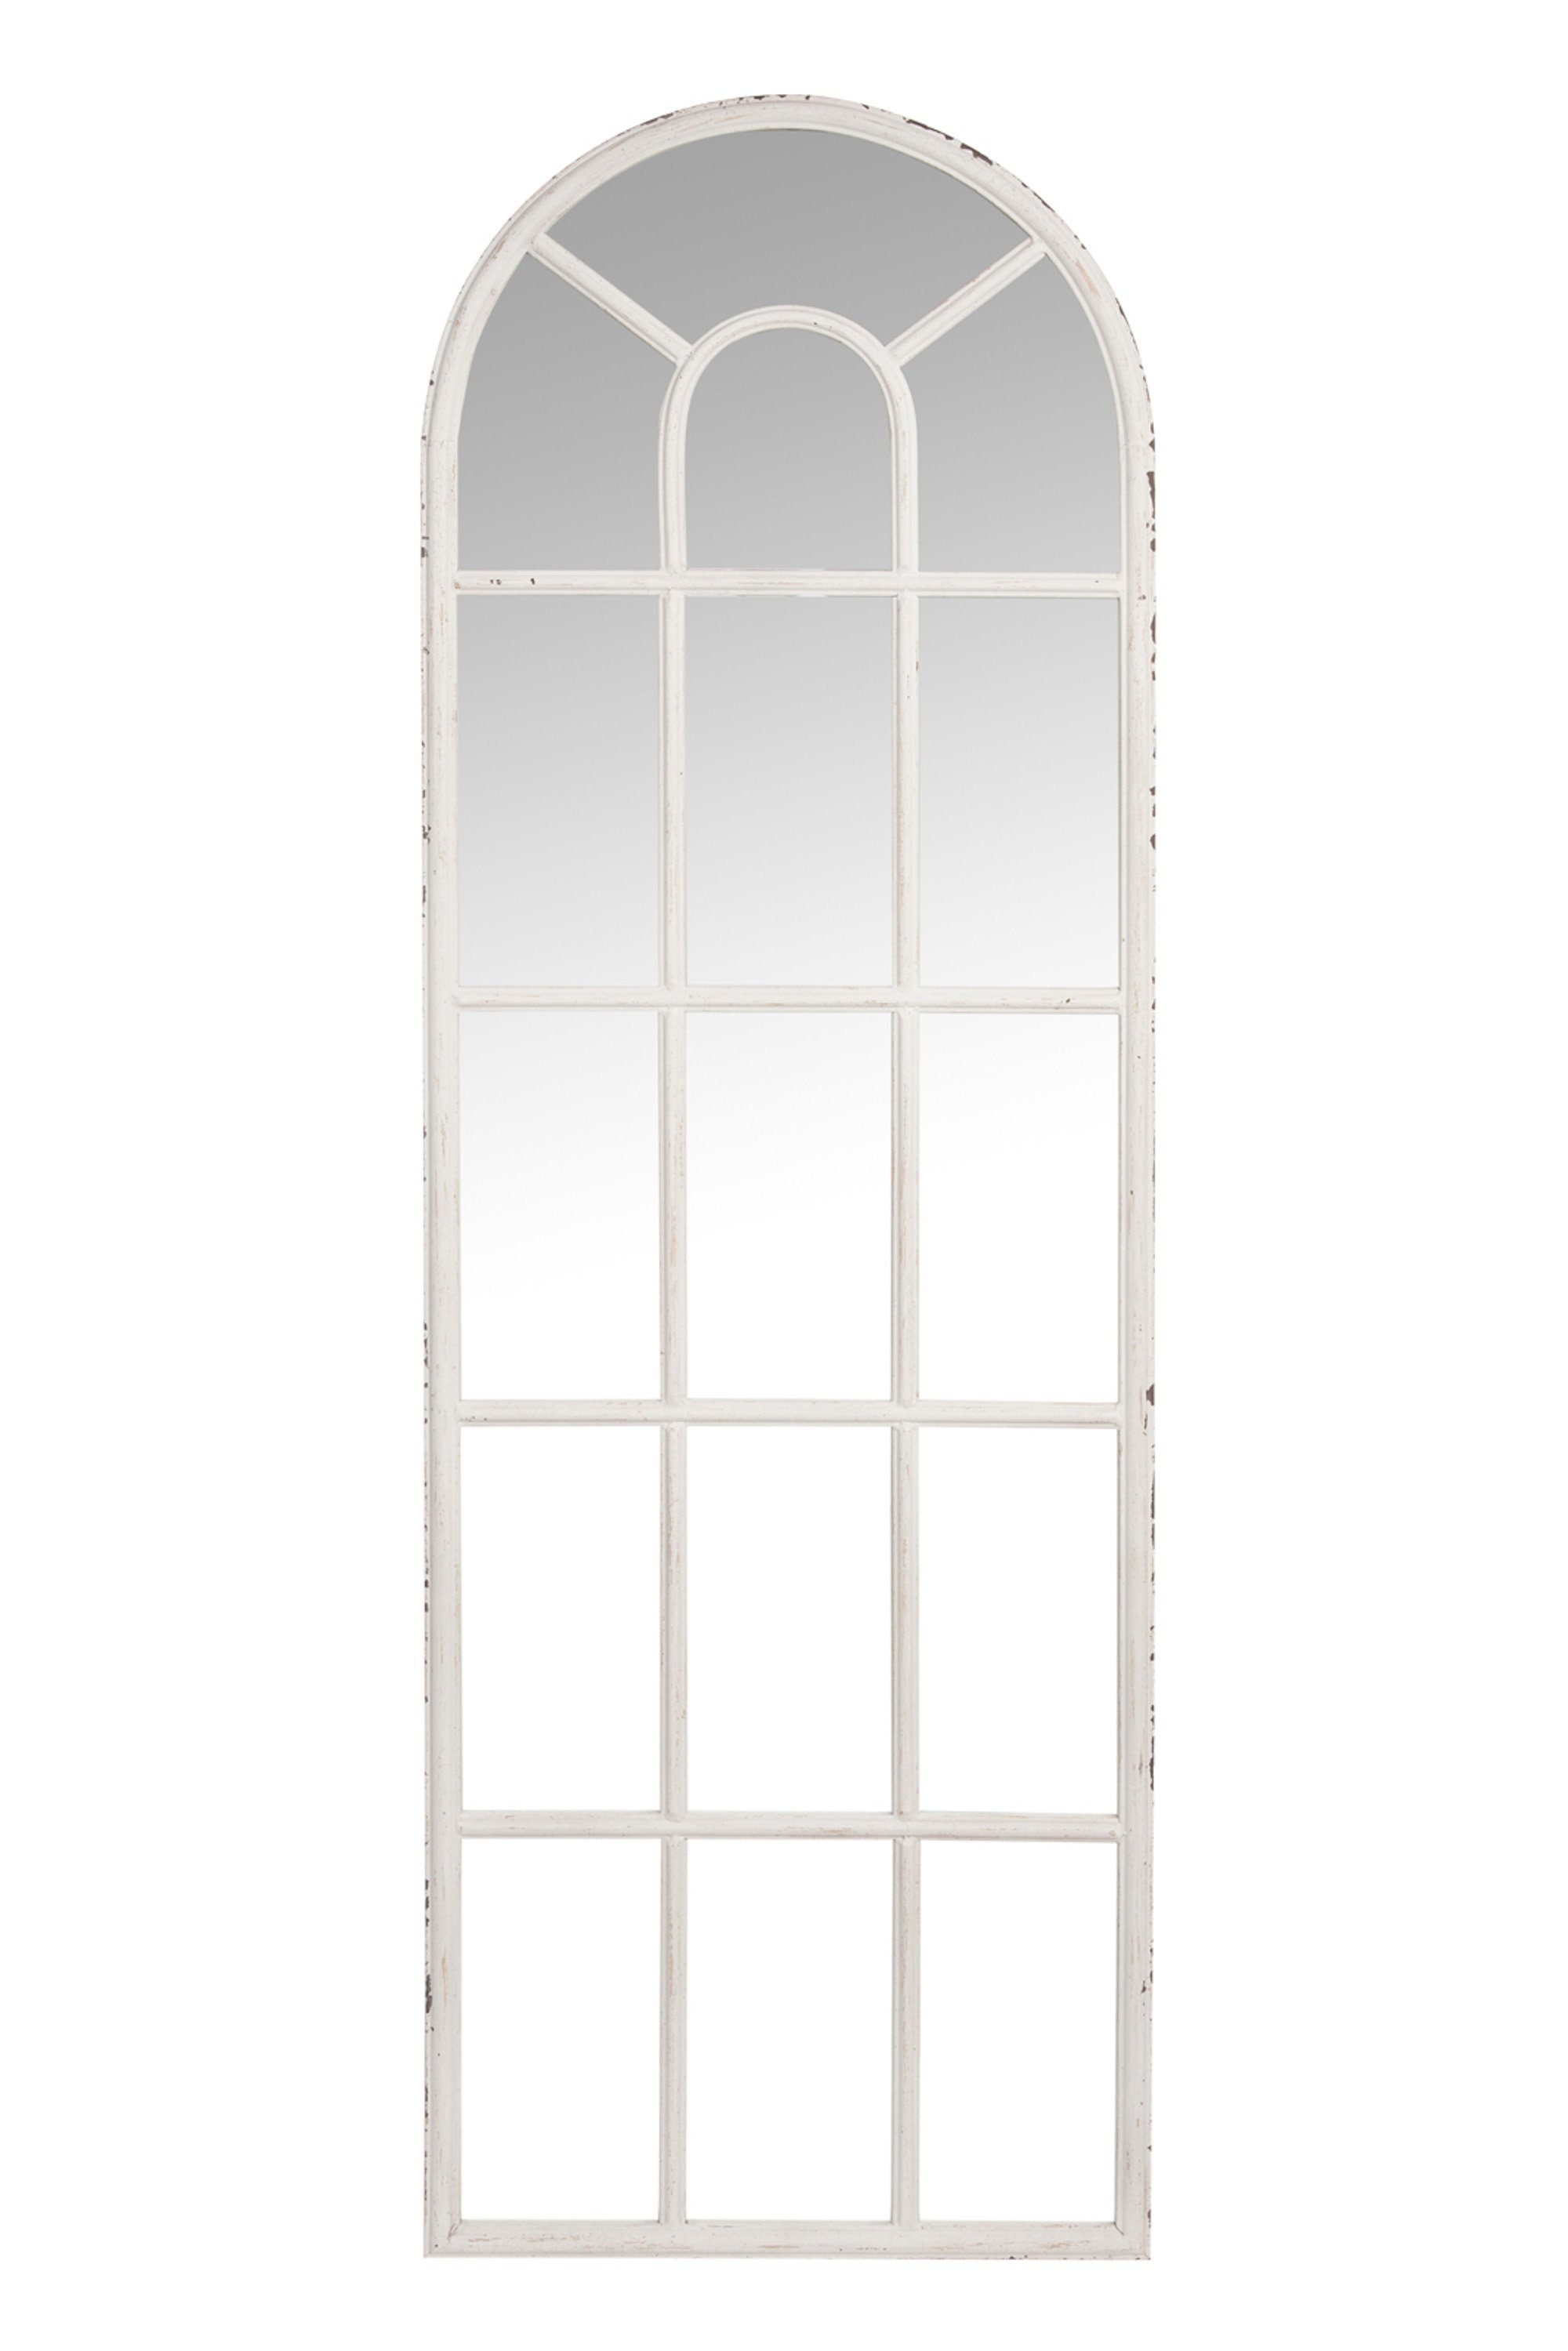 ZMYCZ Wandspiegel, gewölbter Badezimmerspiegel, Bauernhaus-Fensterspiegel  für Wand, gewölbter Spiegel mit Metallrahmen, Schminkspiegel für Wohnzimmer